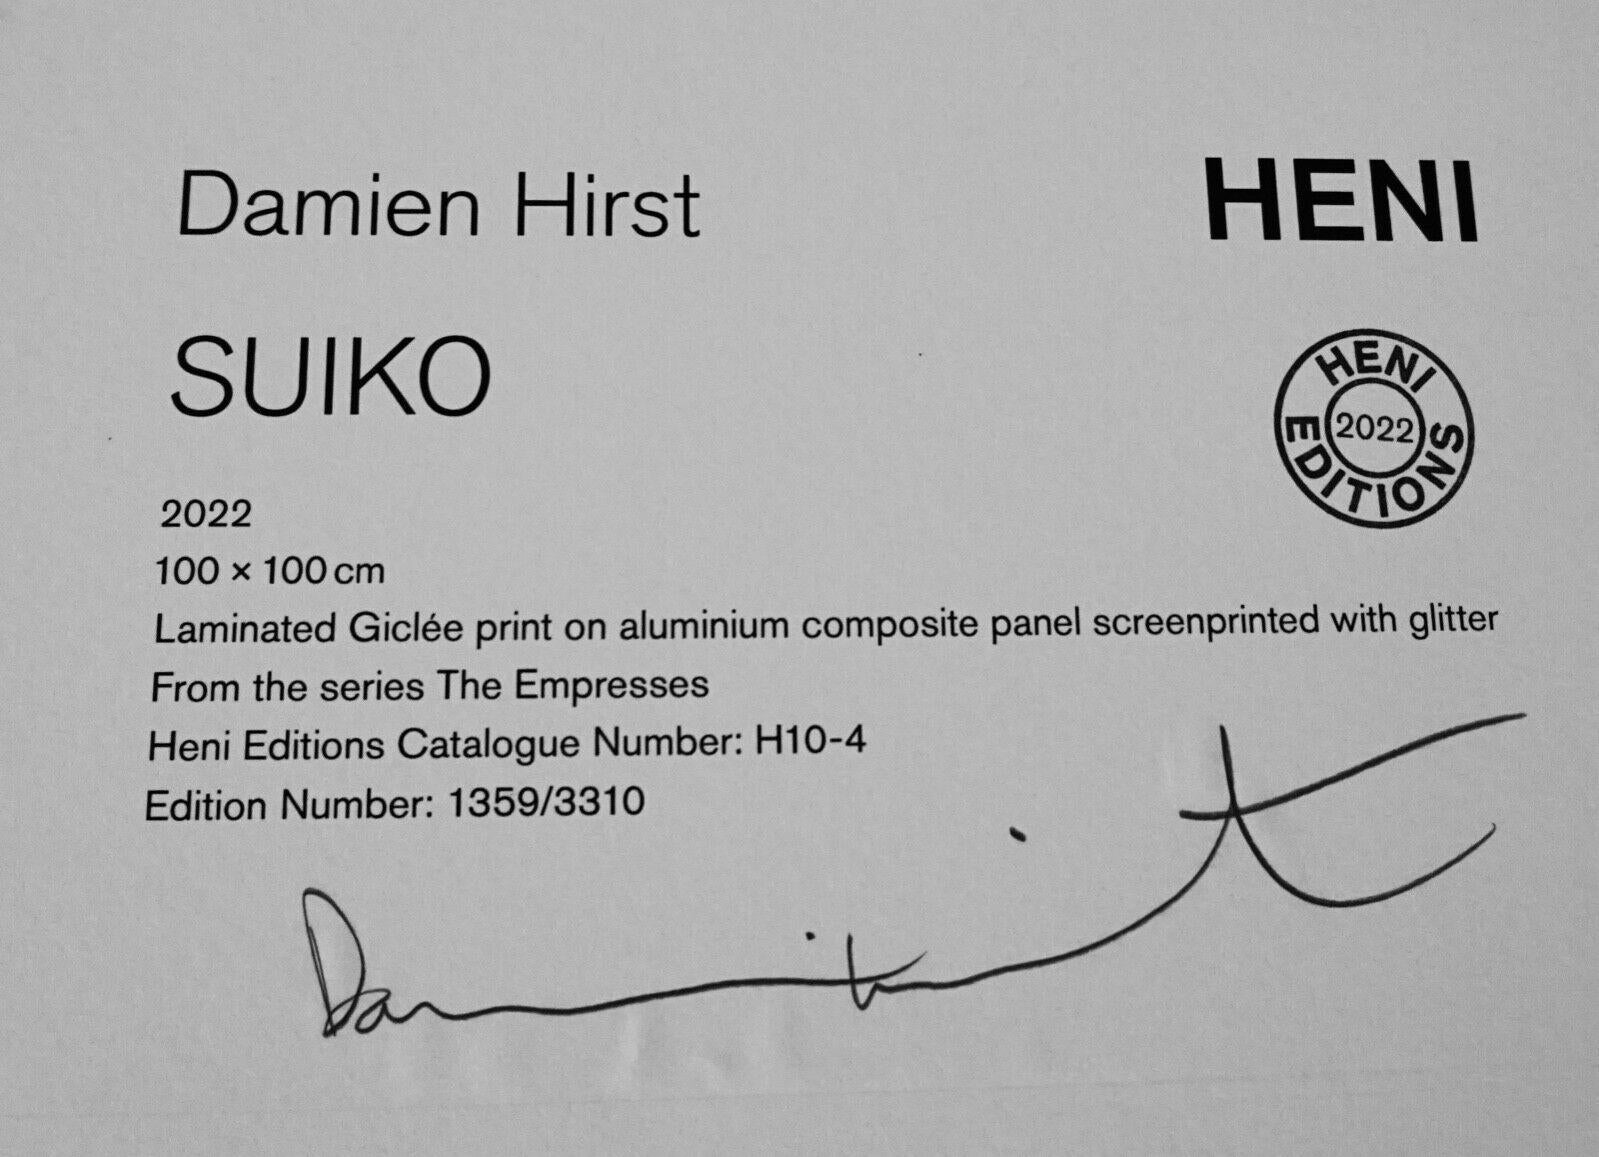 Artistics : Damien Hirst
Titre : Les impératrices Suiko H10-4
Moyen :  Impression Giclée laminée sur aluminium composite, sérigraphie avec paillettes

Signé : Signé à la main et numéroté sur l'étiquette au verso

Dimensions : 39.37